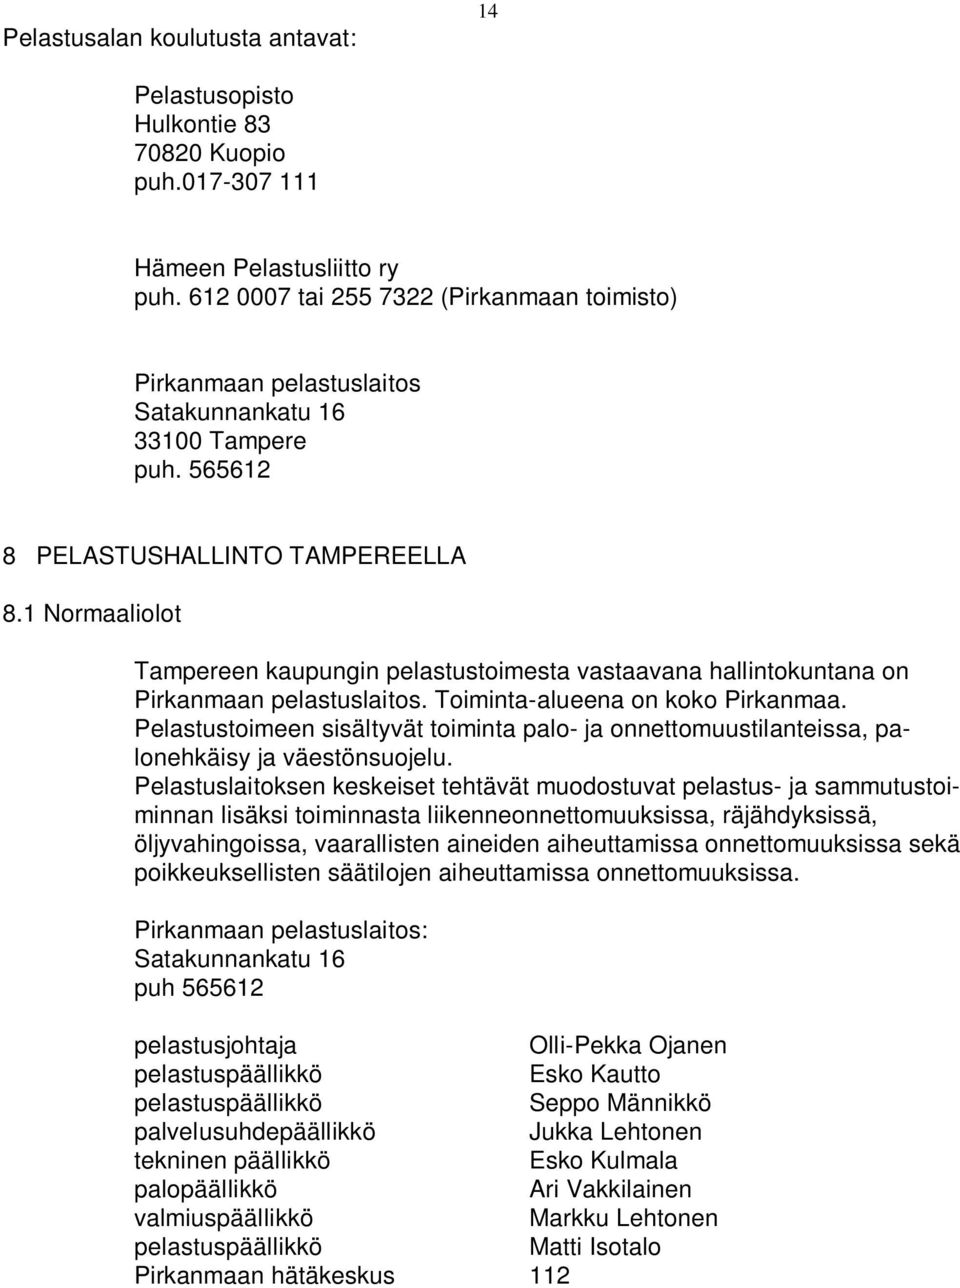 1 Normaaliolot Tampereen kaupungin pelastustoimesta vastaavana hallintokuntana on Pirkanmaan pelastuslaitos. Toiminta-alueena on koko Pirkanmaa.